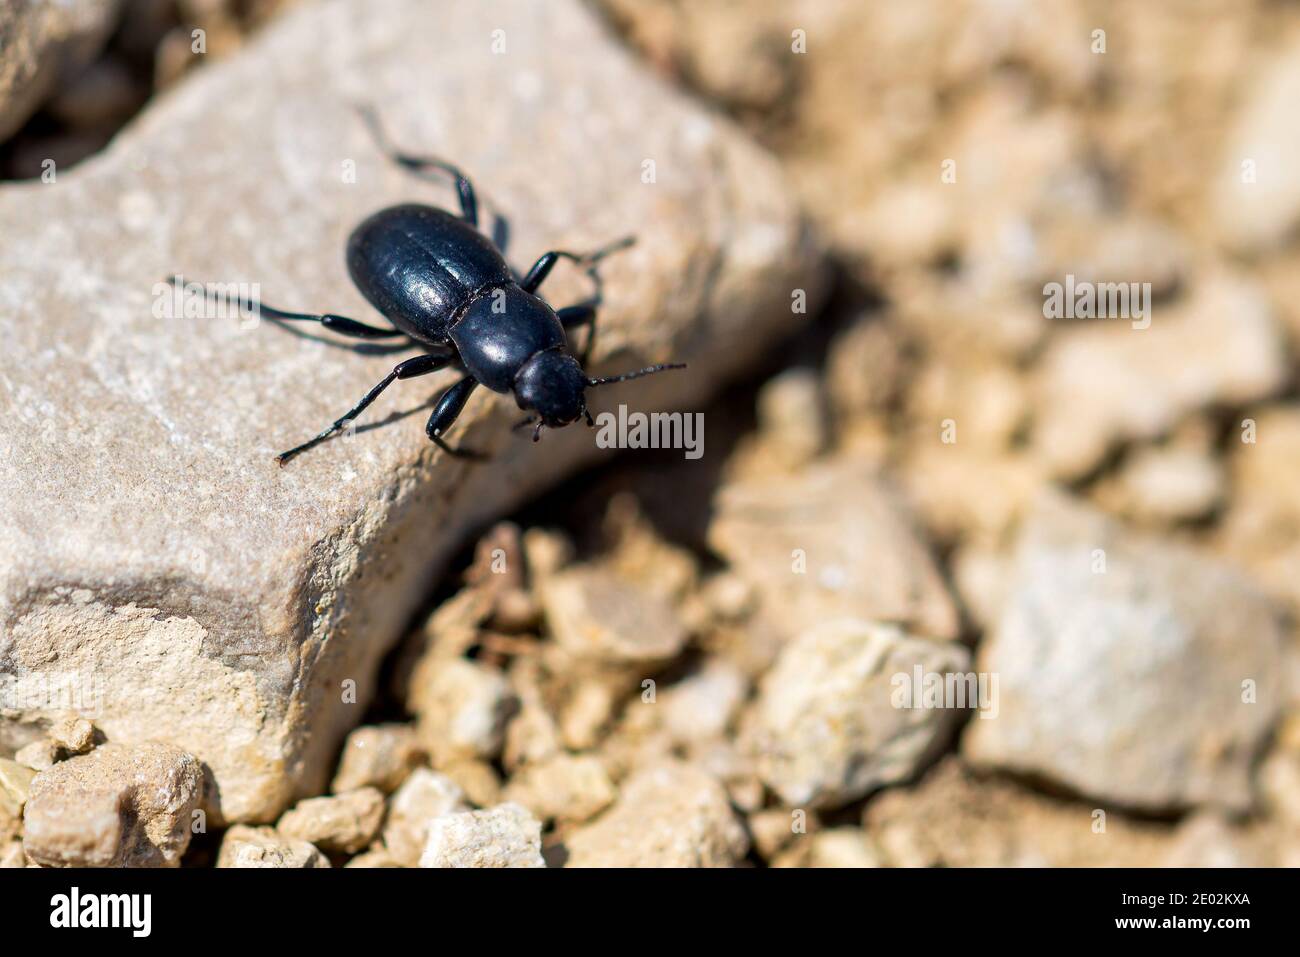 Desert Stink Beetle or Eleodes Armata on a stone. Stock Photo